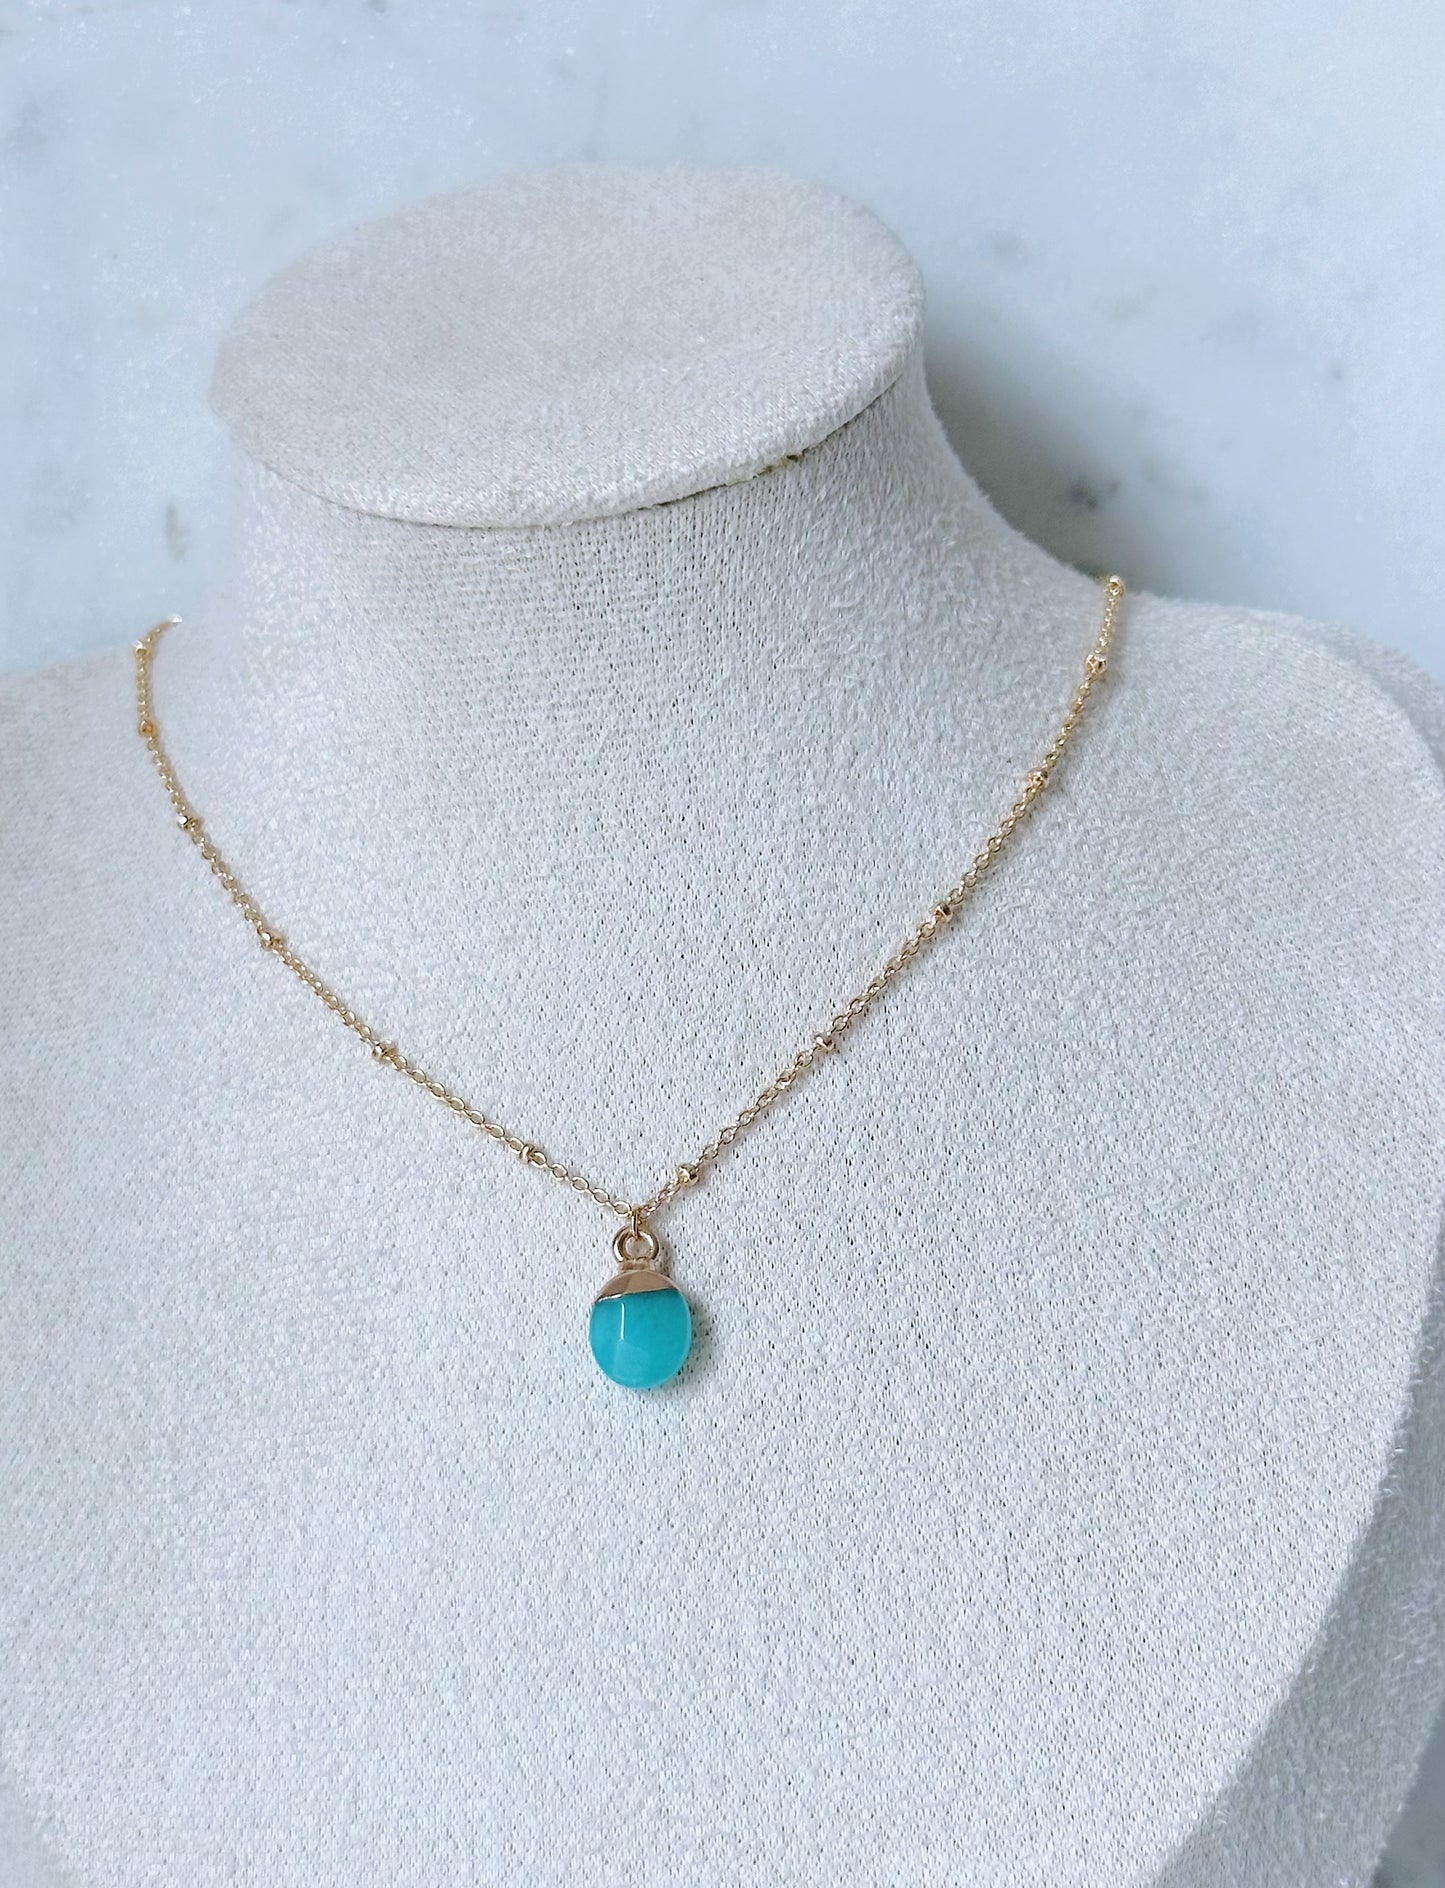 Turquoise nugget gemstone necklace